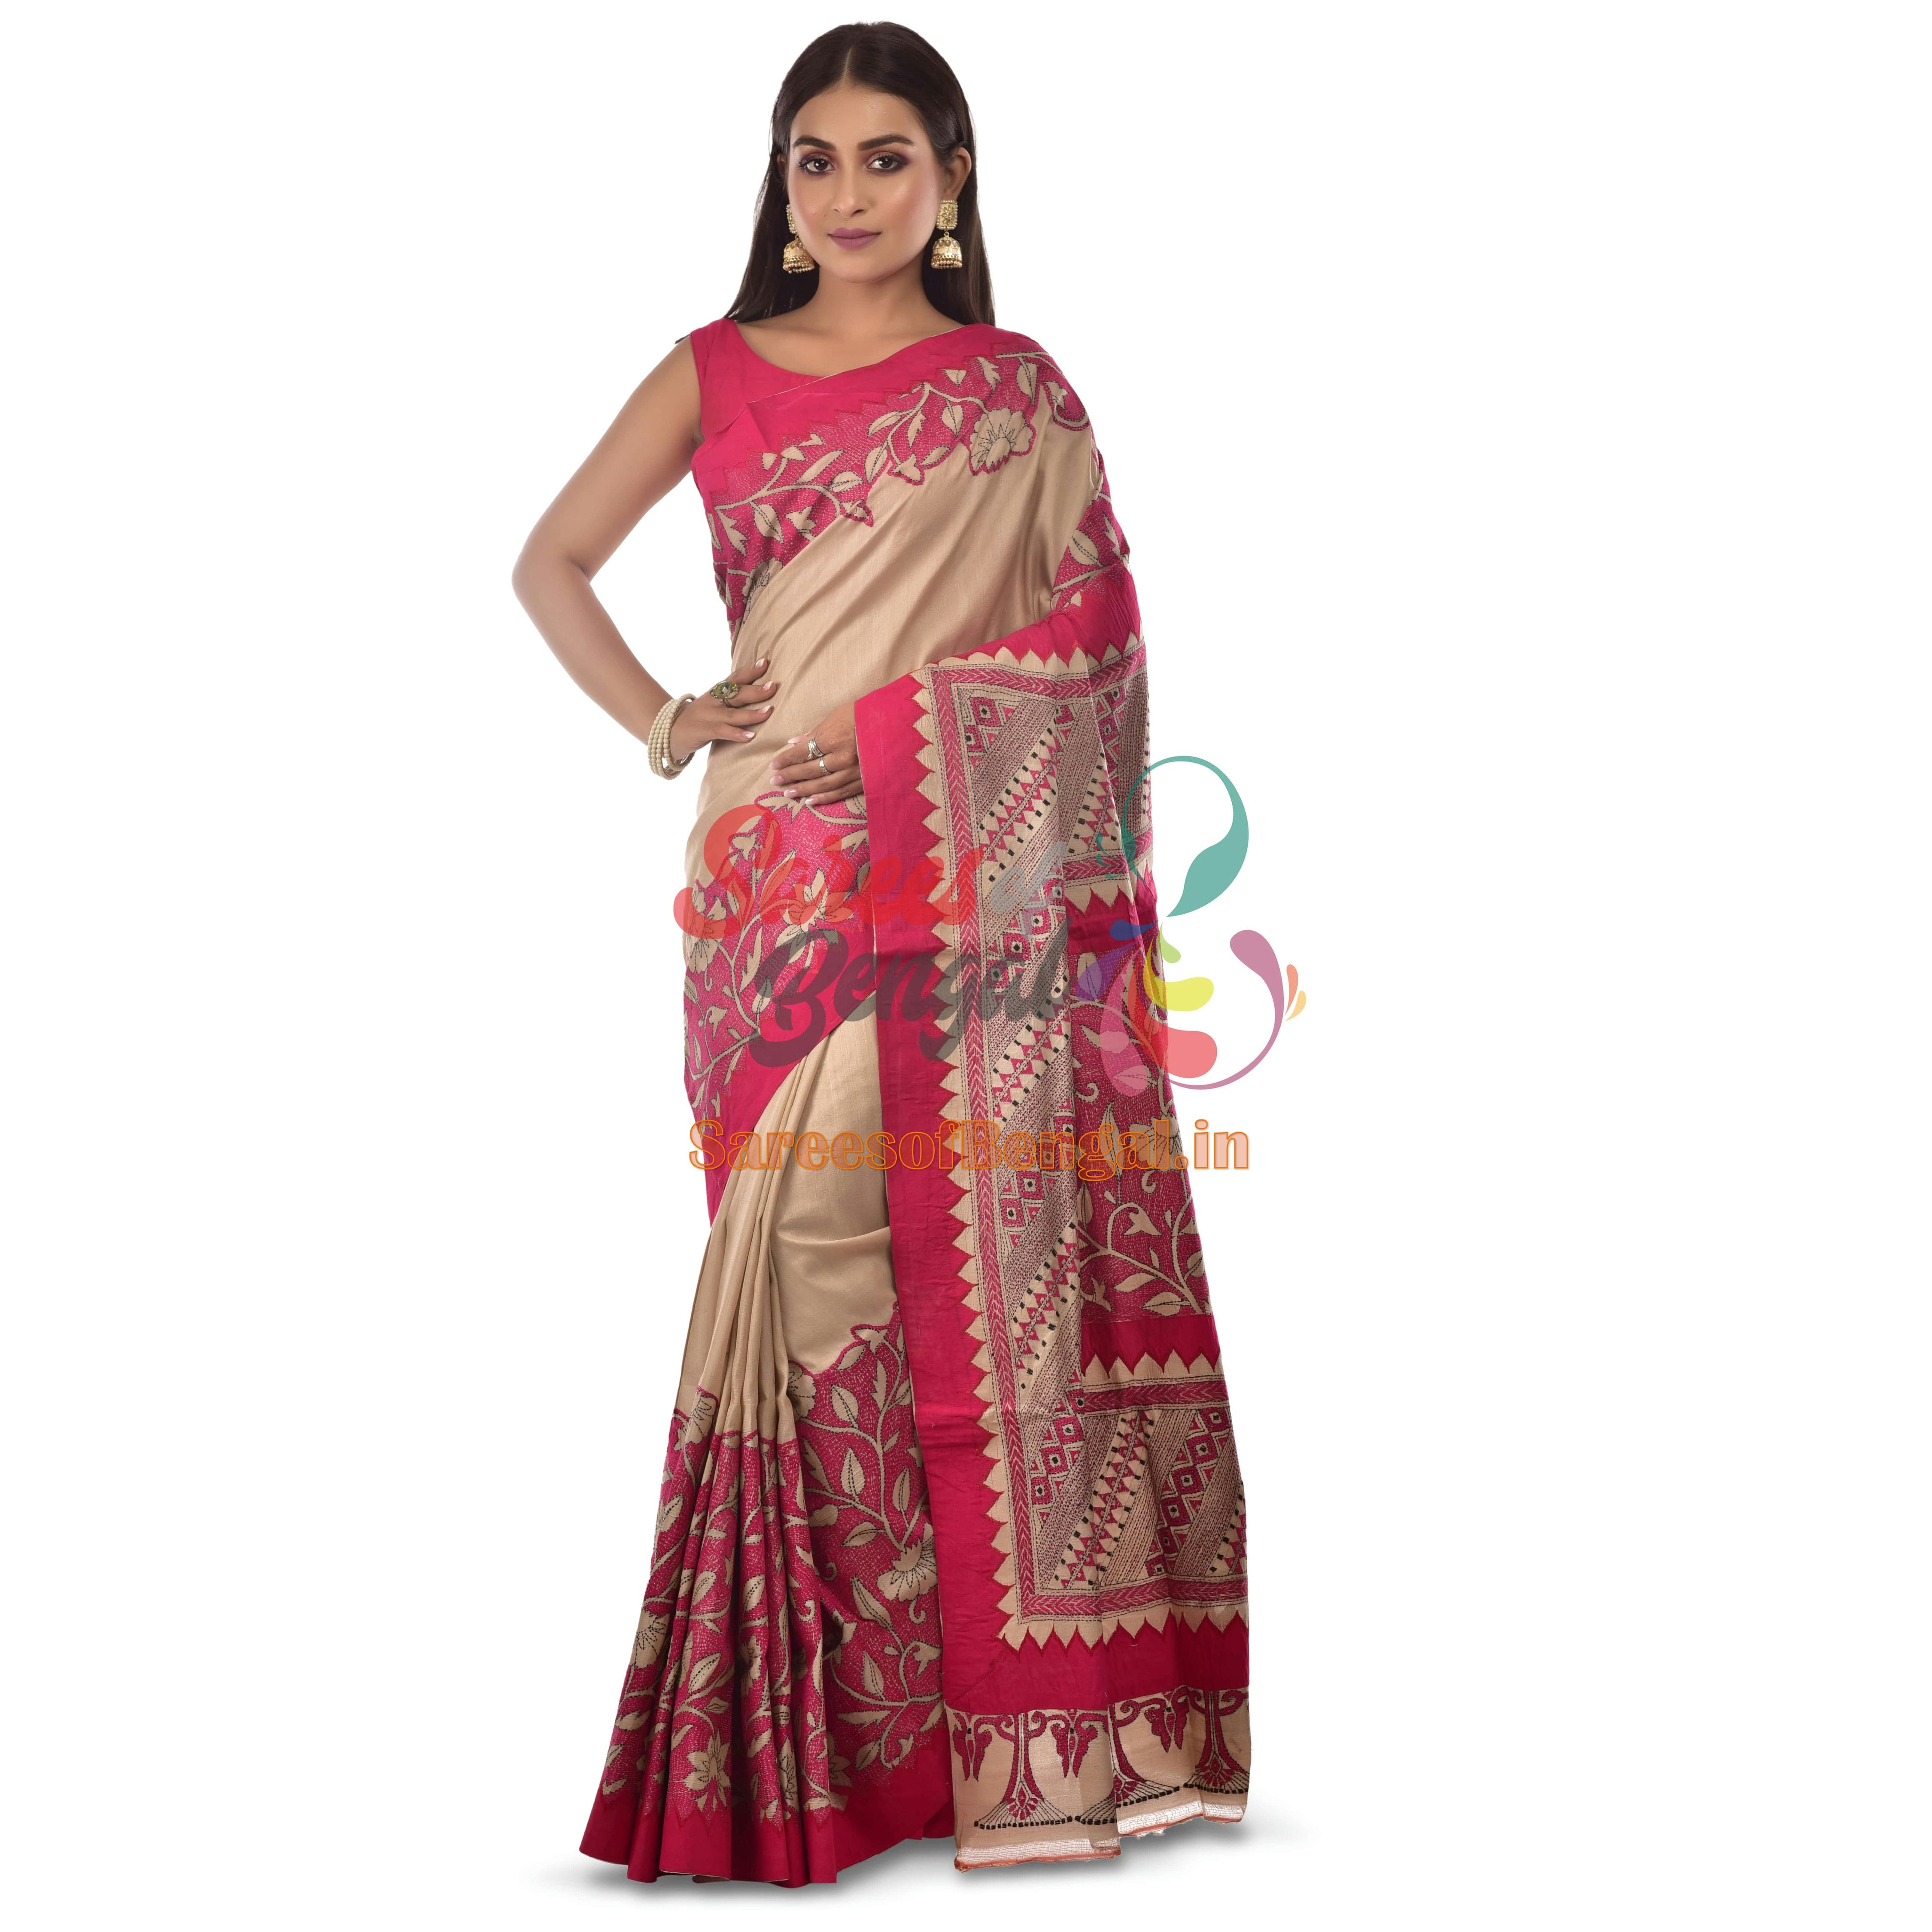 Copy of Premium Applique Tussar Kantha Silk Saree